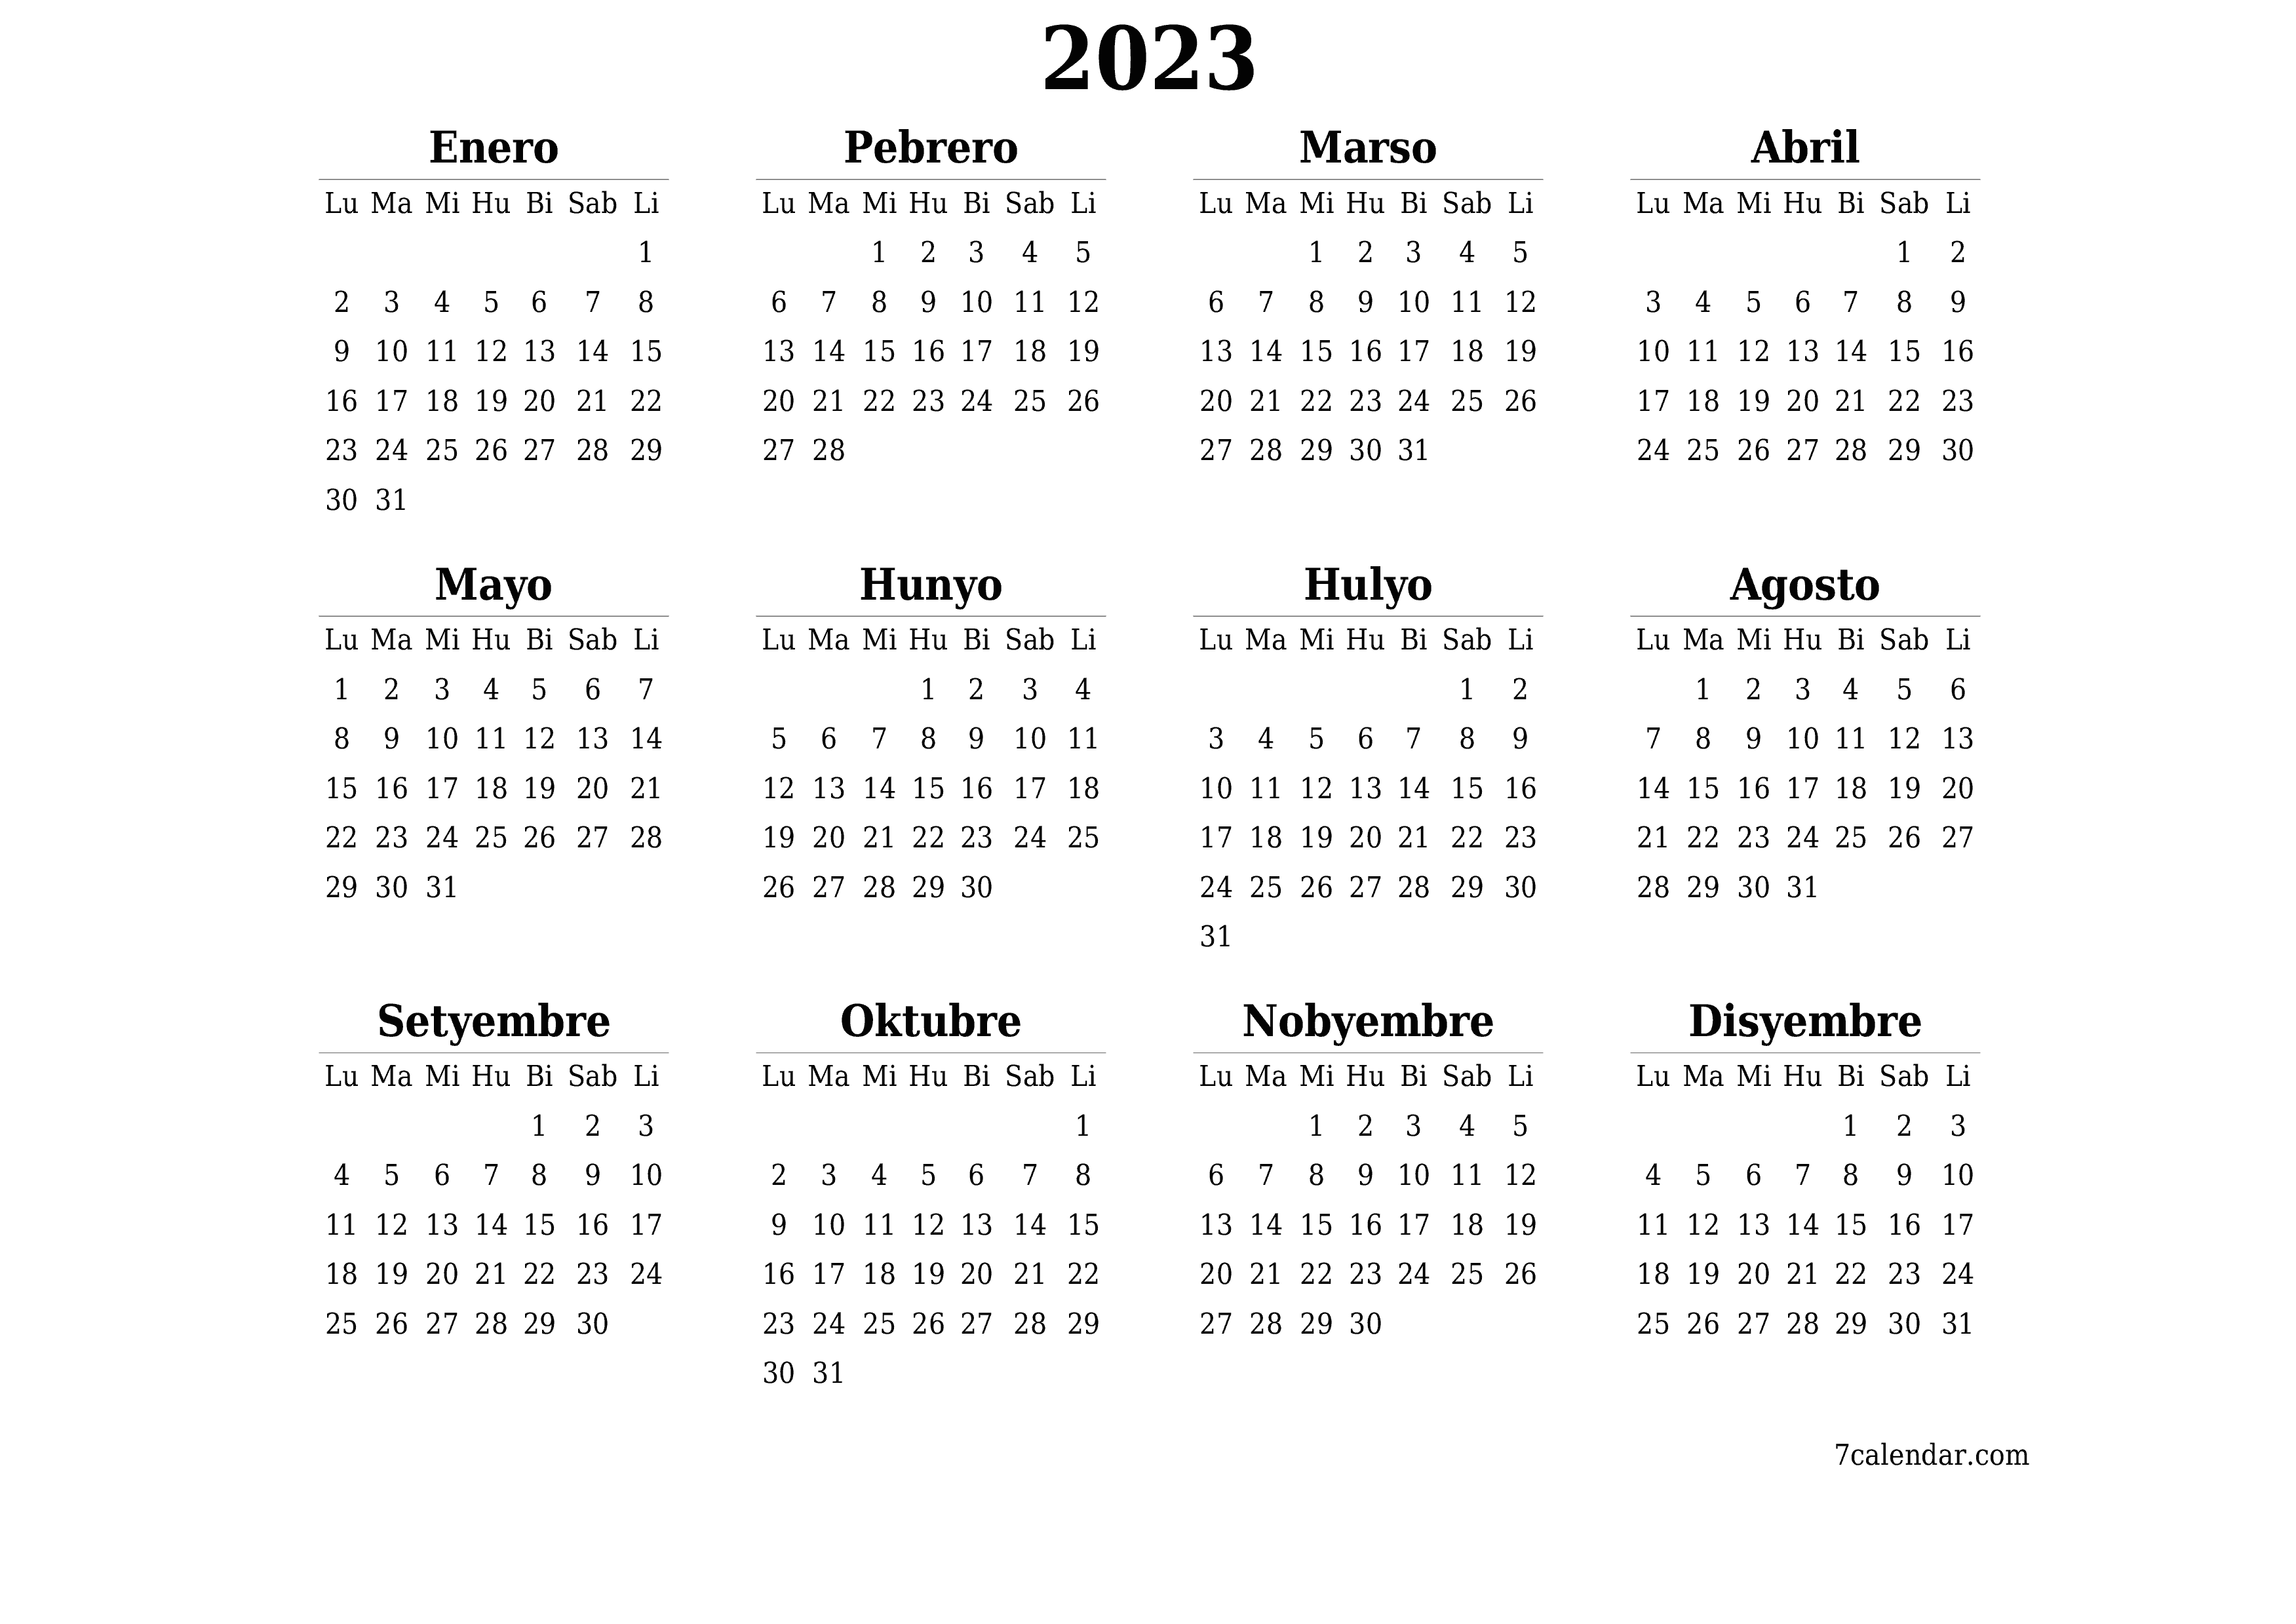 napi-print na sa dingding template ng libreng pahalang Taunan kalendaryo Setyembre (Set) 2023